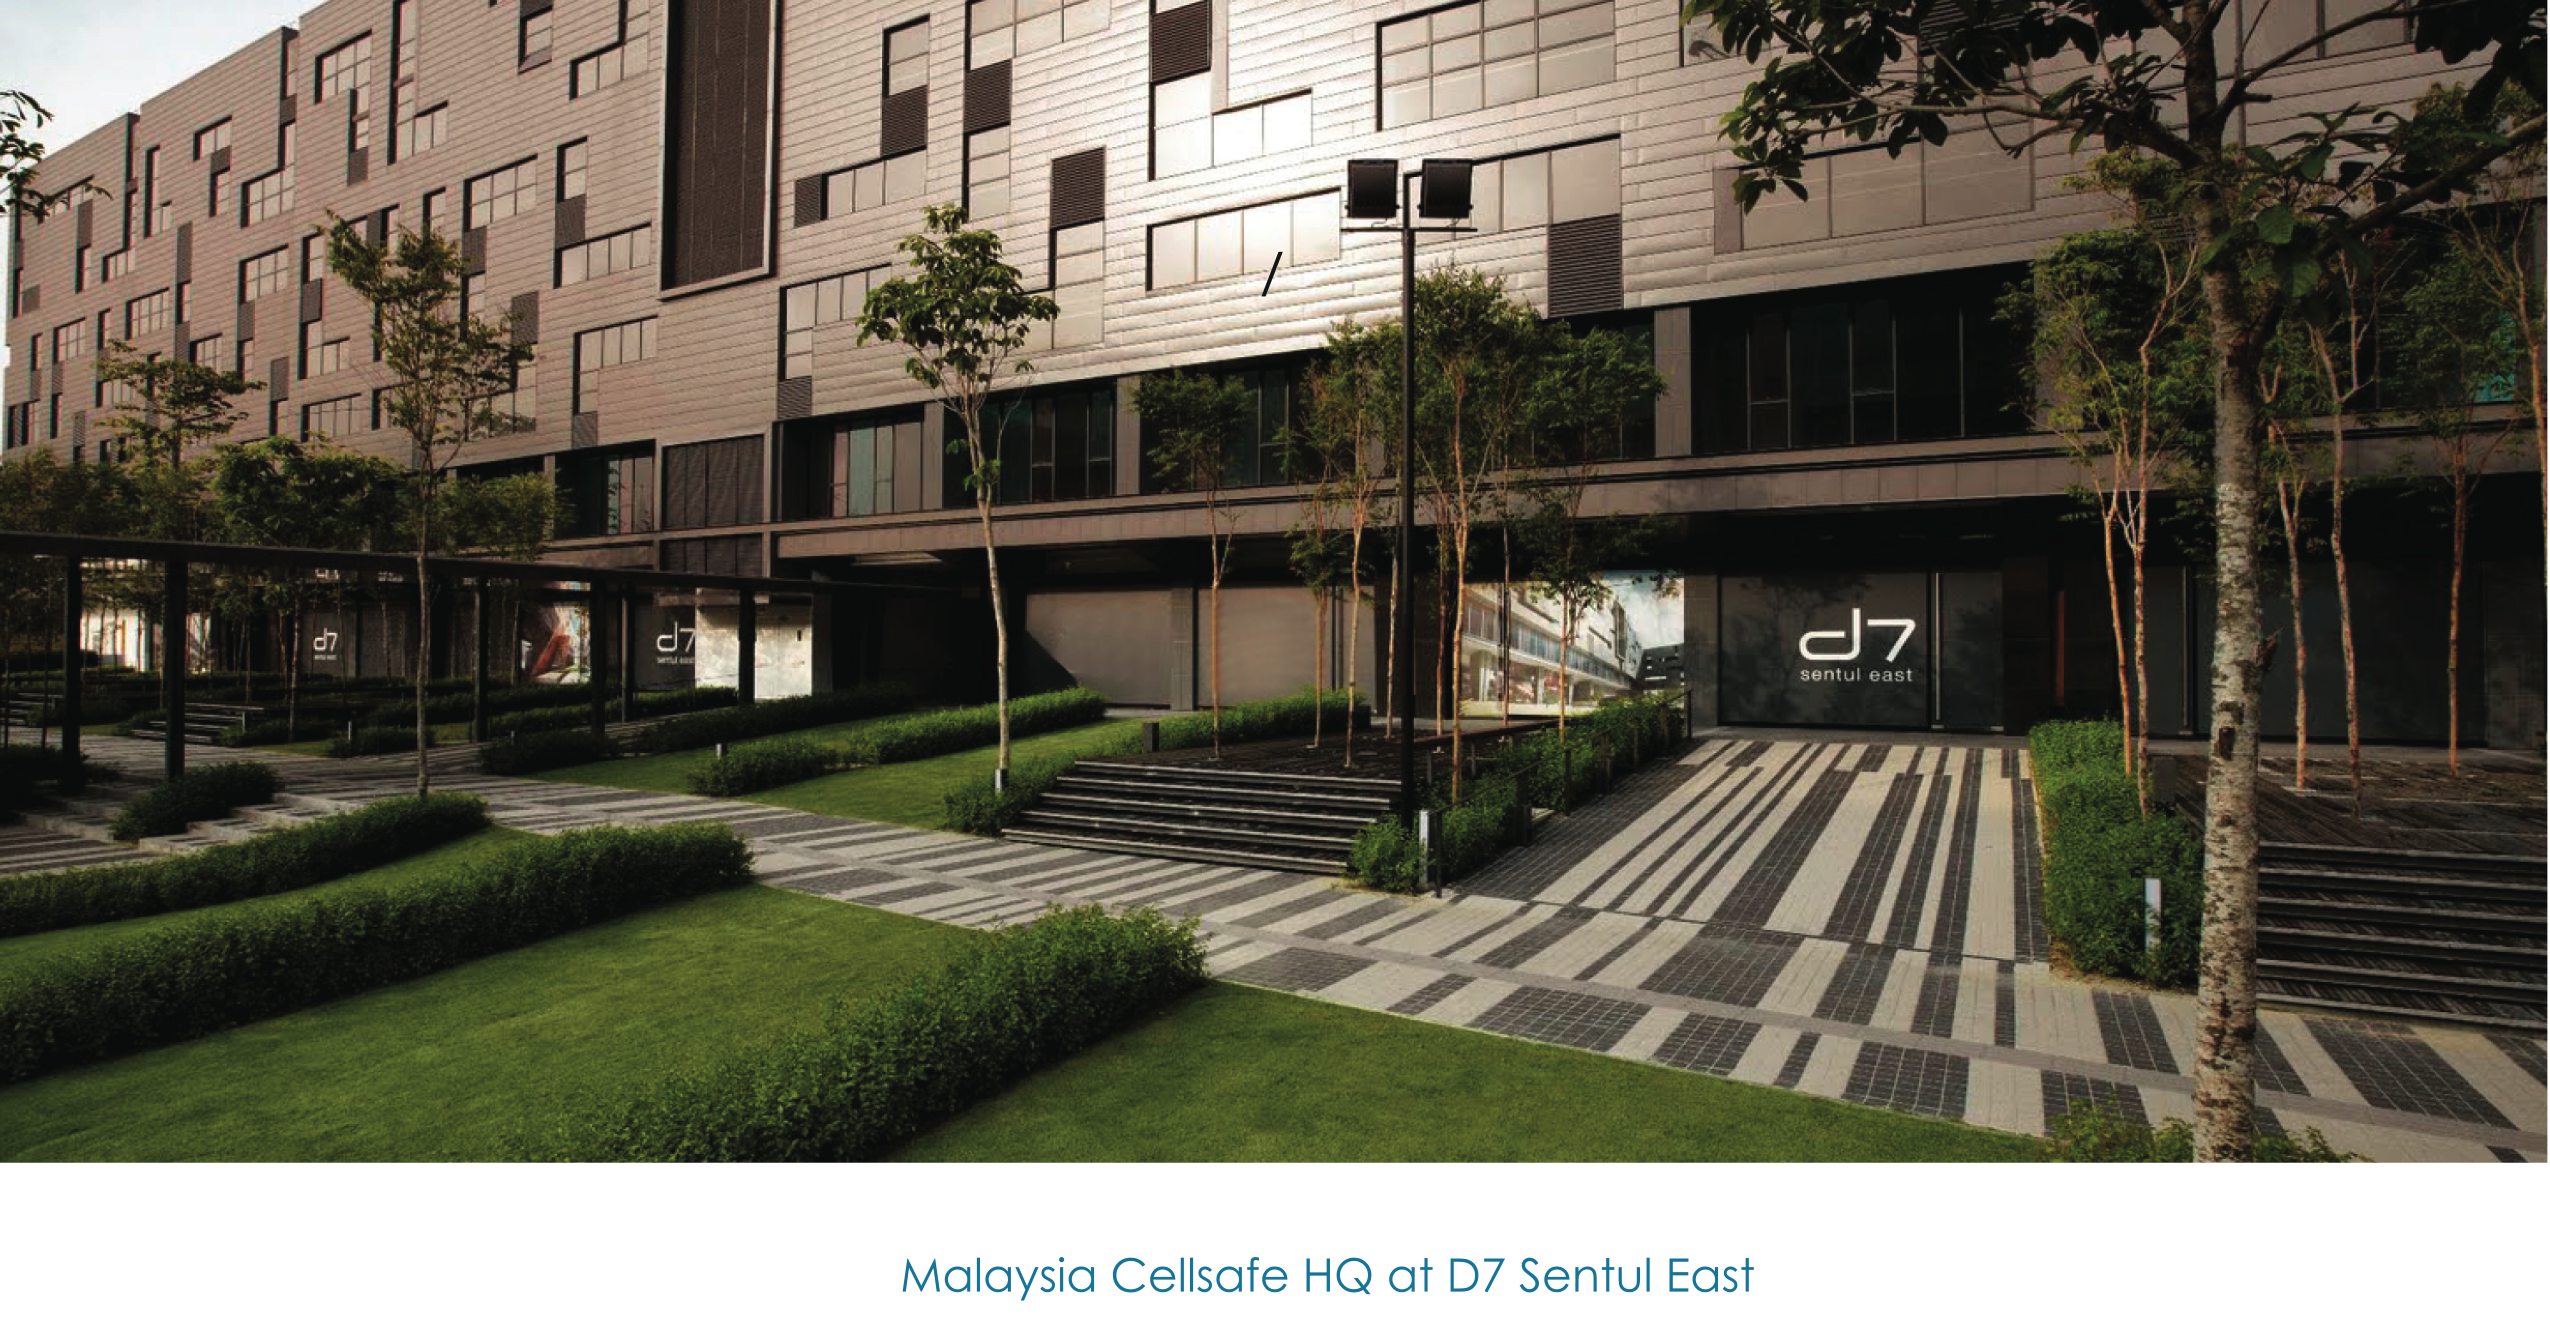 Malaysia Cellsafe HQ (D7 Sentul East)